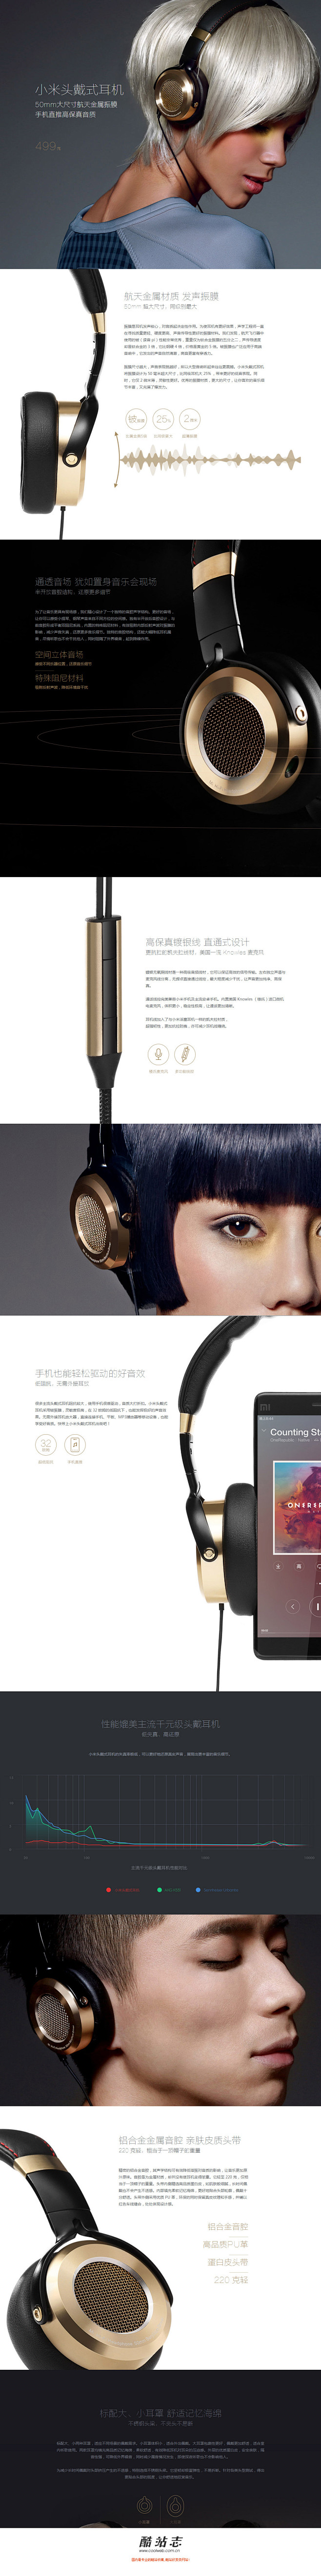 小米头戴式耳机产品网站 单页酷站--酷站...